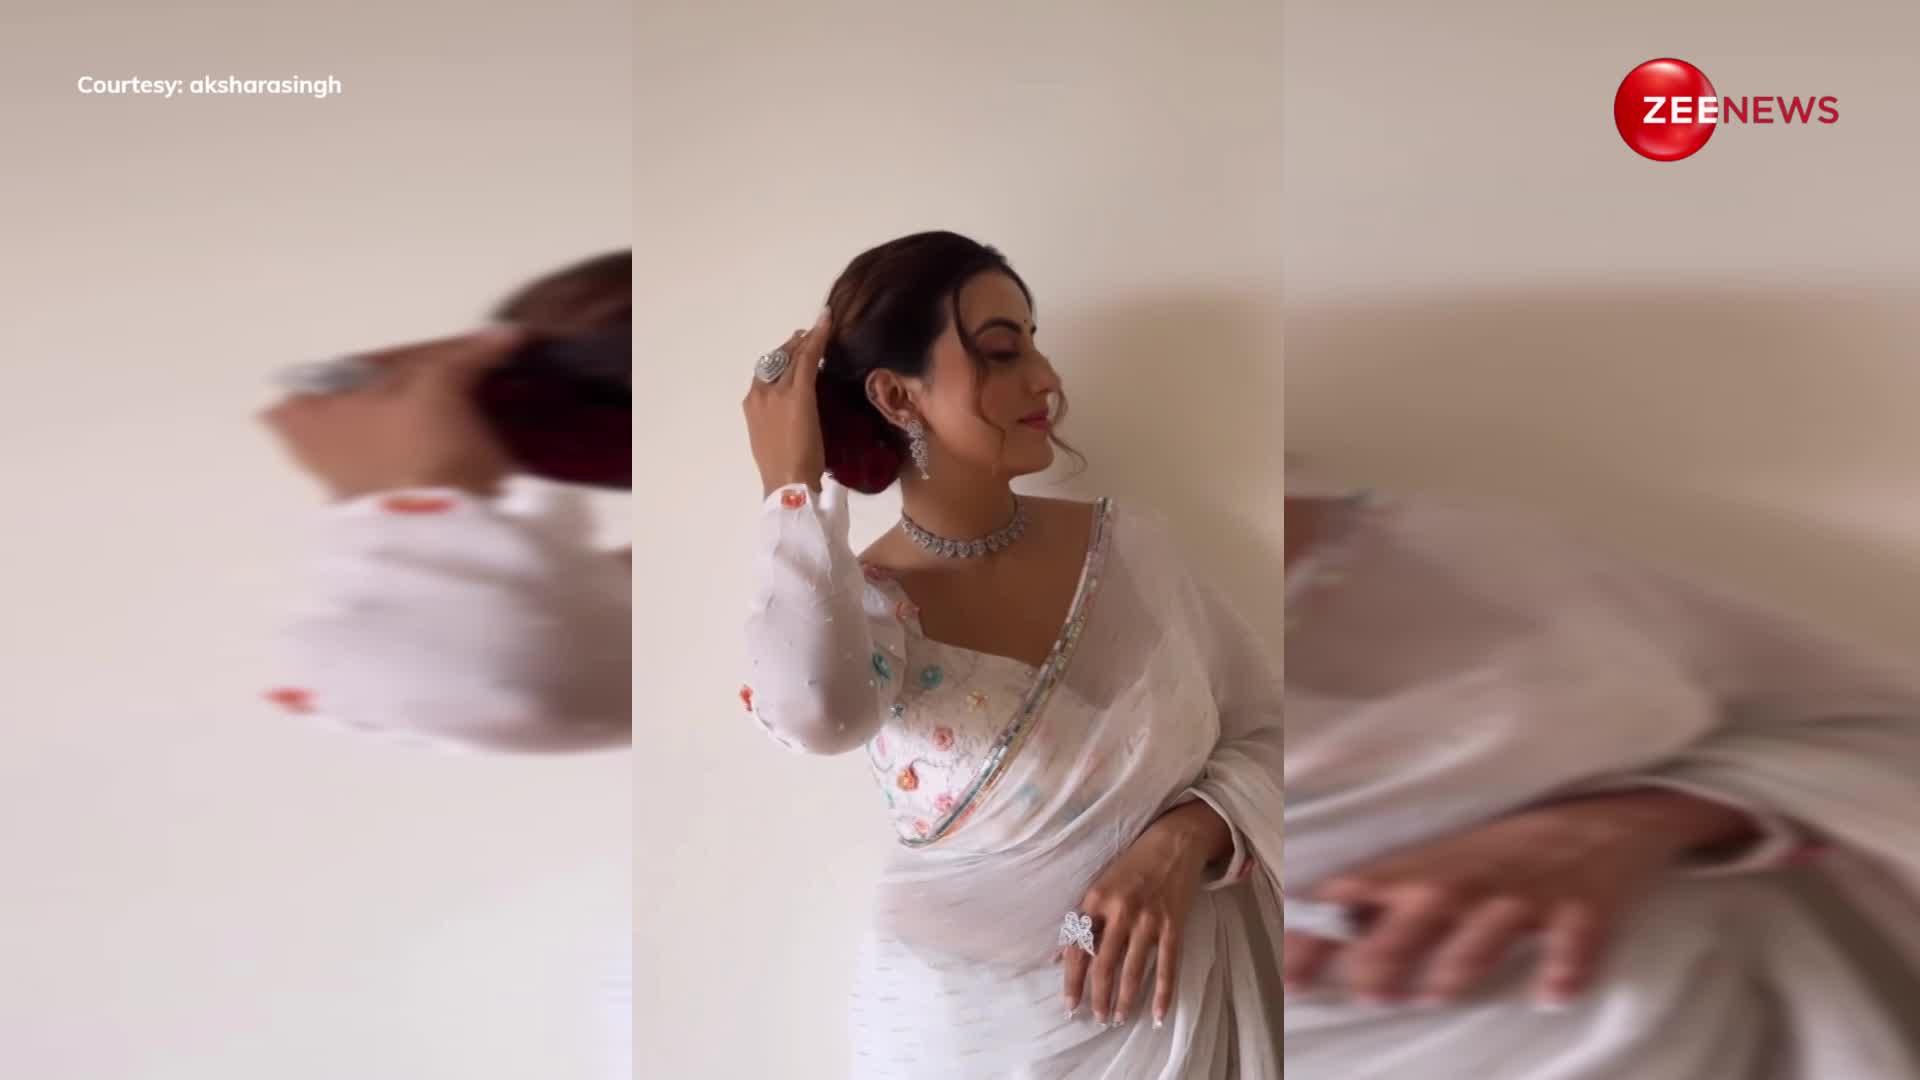 90s के सदाबहार गानों पर वाइब करती हुई नजर आईं Akshara Singh, व्हाइट साड़ी पहन दिखा रही हैं नॉटी नजाकत